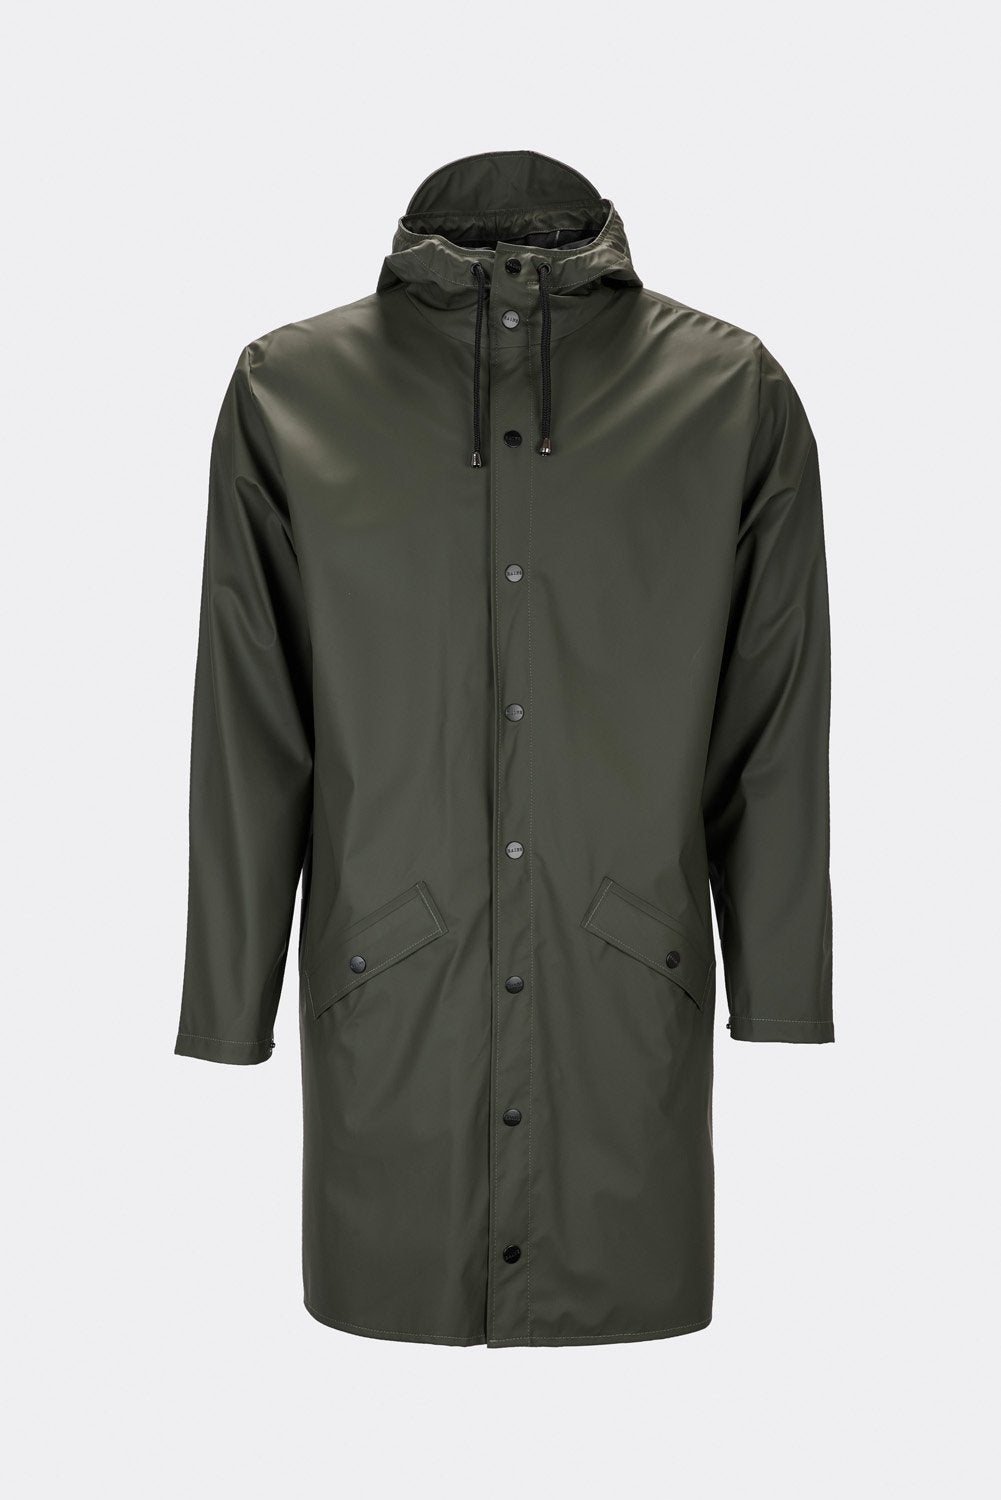 Waterproof Long Green Jacket